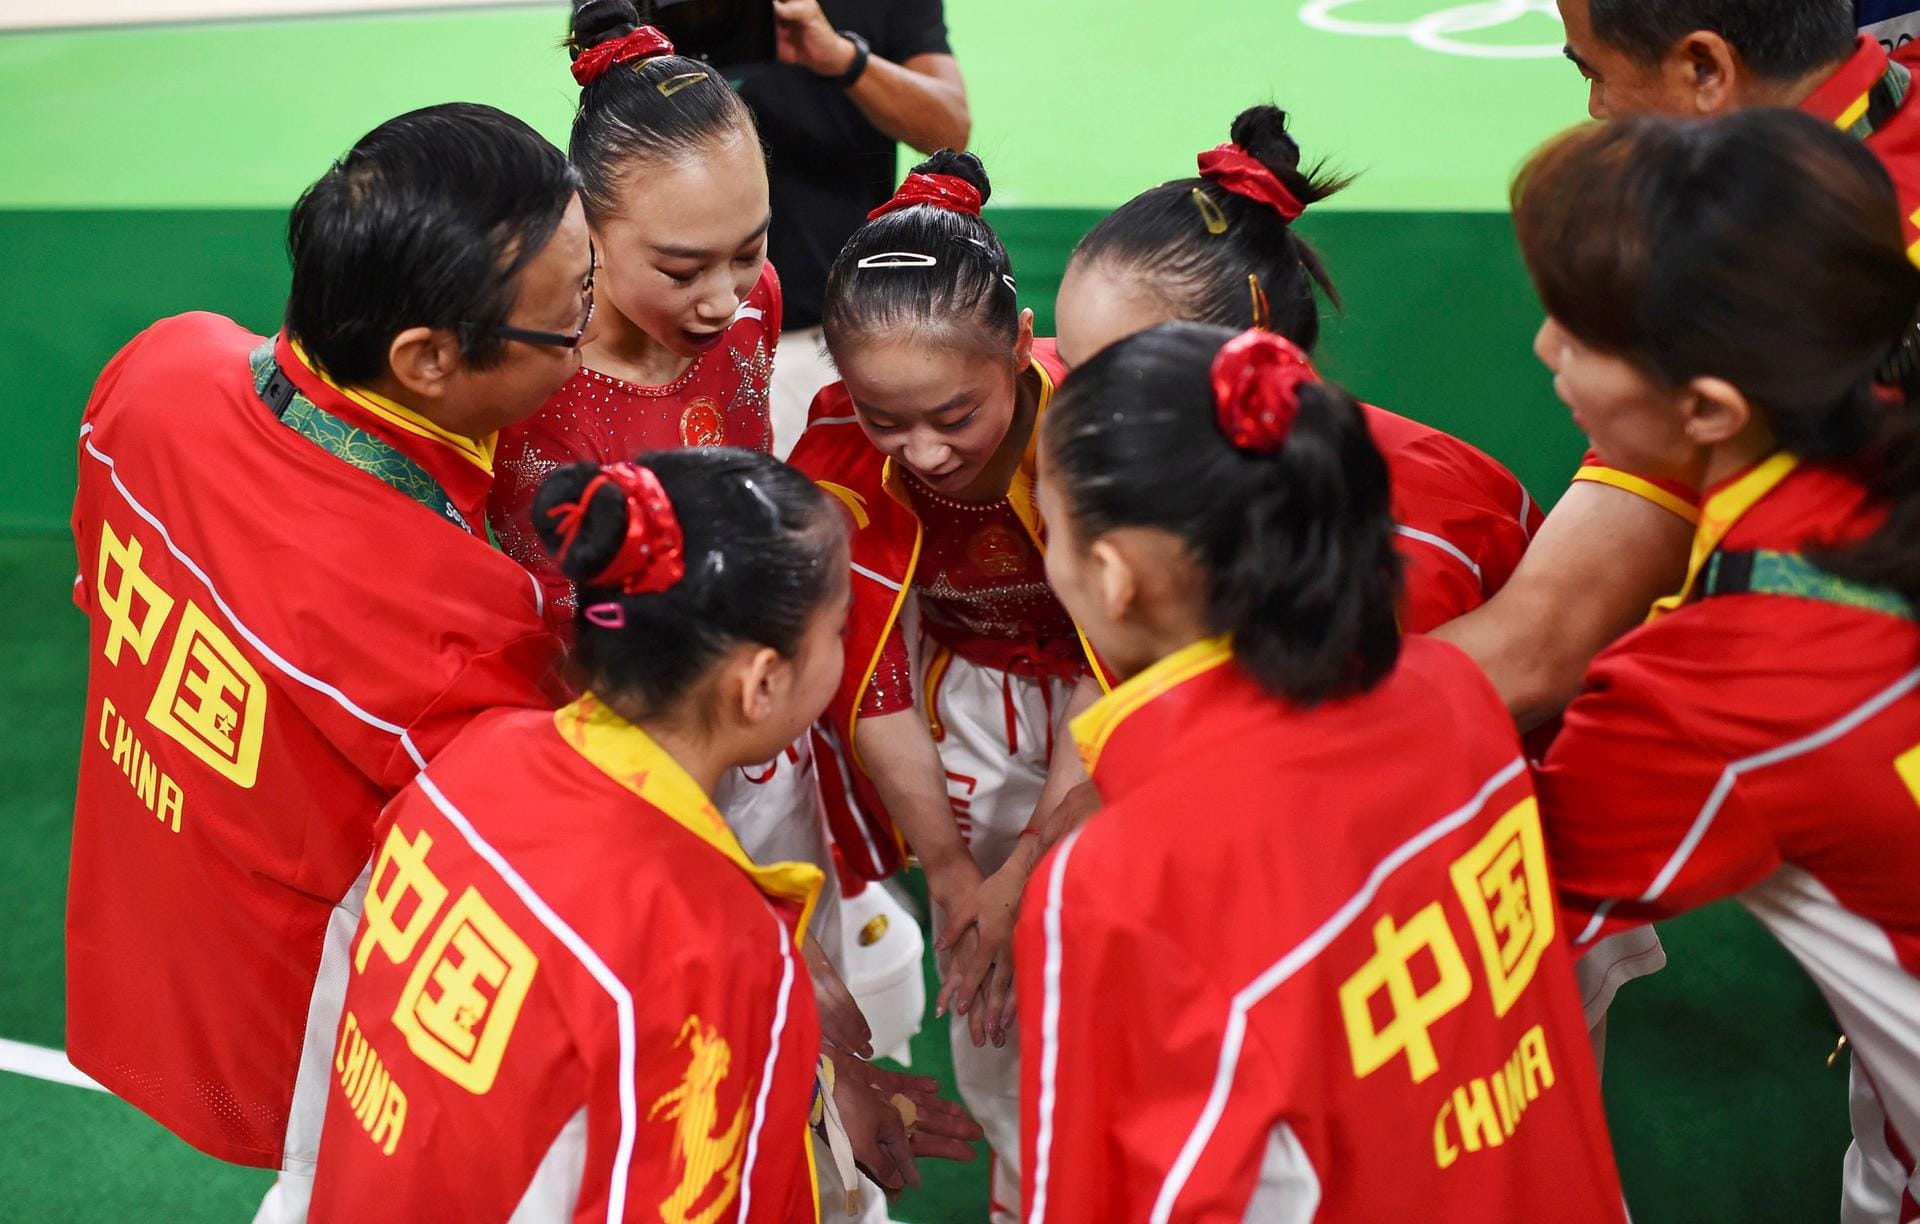 Gemeinsam vor dem Wettkampf: Das chinesische Turner-Team schwört sich ein.